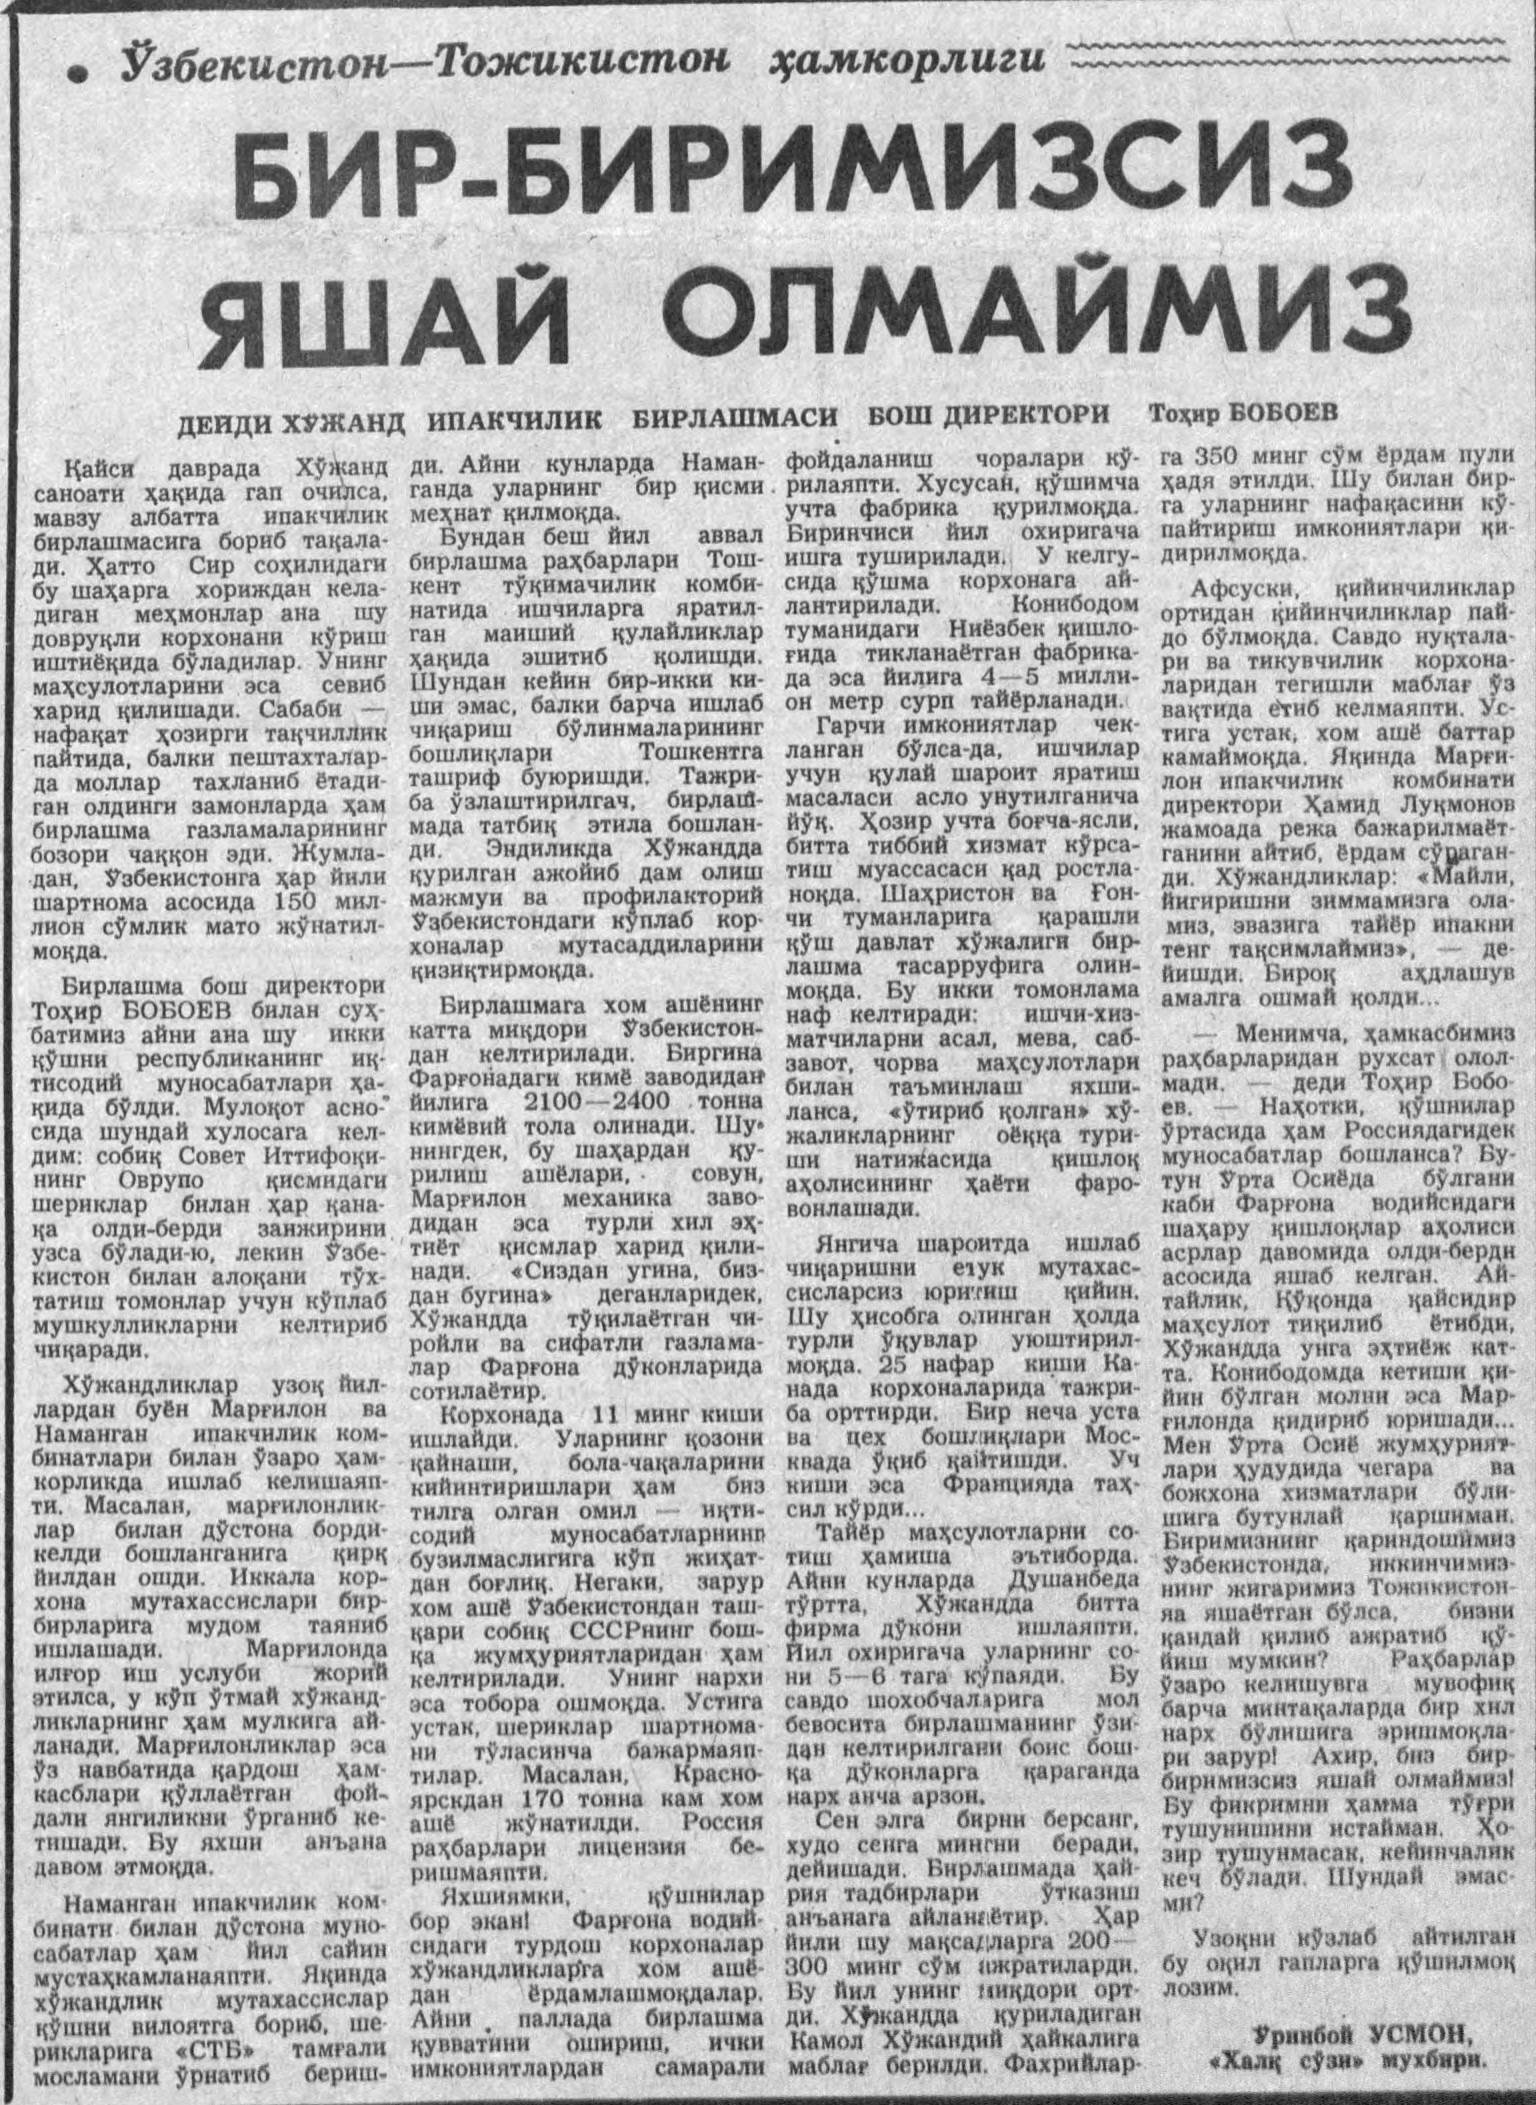 «Халқ сўзи» газетасининг 1992 йил 30 апрель сонидан лавҳа